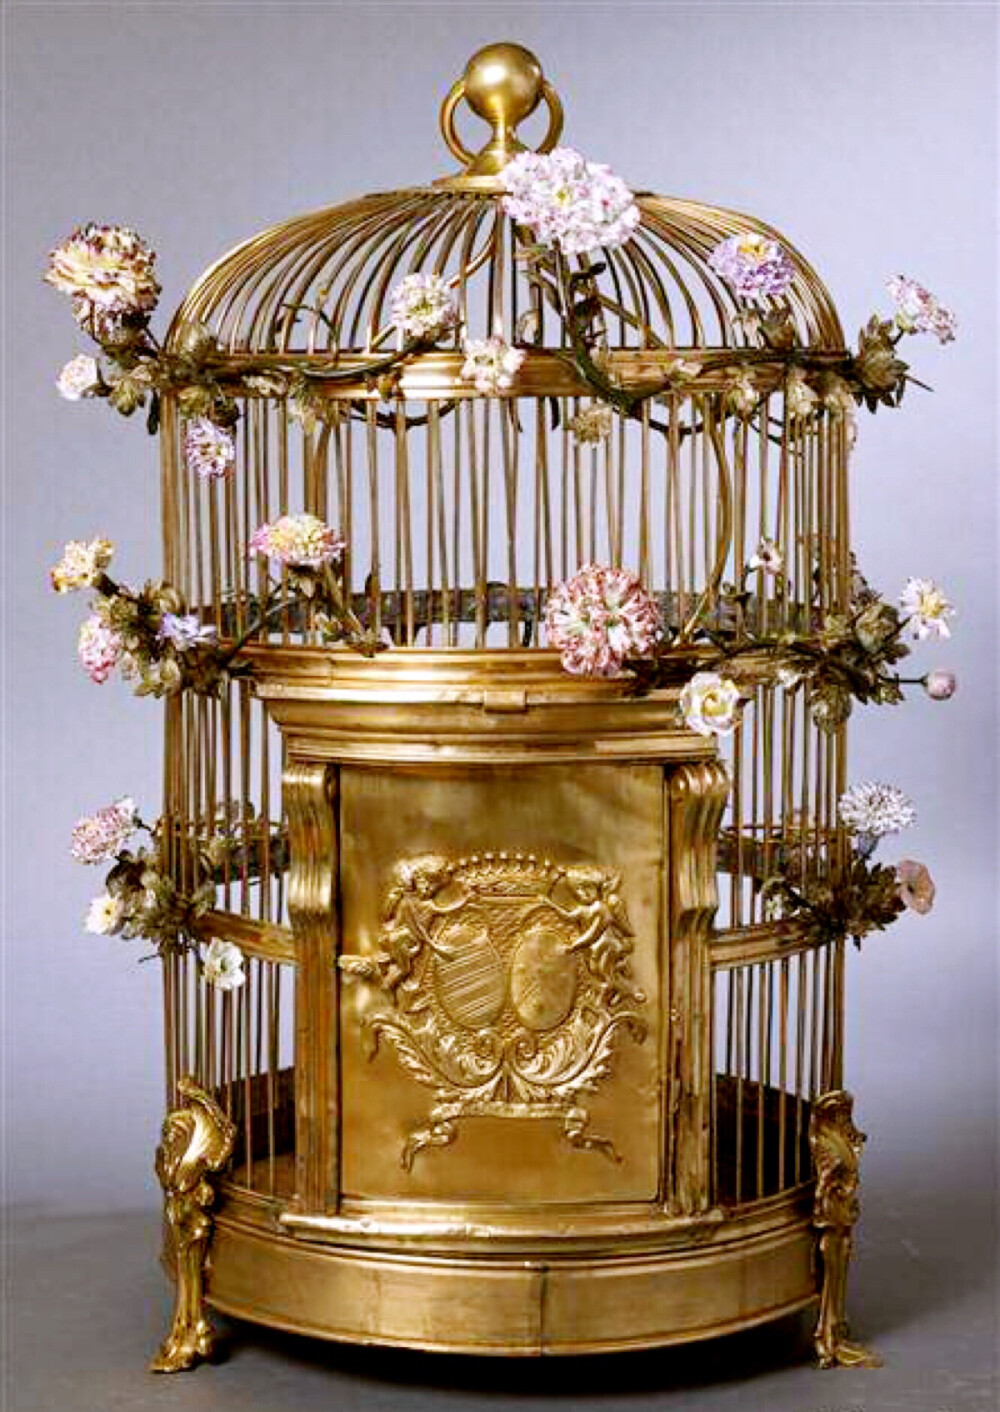 这件十八世纪的鸟笼制作工艺可是不一般！从外表上就能看出它非常精致繁复，而它可是由当时大名鼎鼎的梅森瓷器厂制造而来的。除了使用了镶金青铜之外，还用到了木料和硬瓷，其本身的价值也十分昂贵。而这只鸟笼就是杜巴丽夫人曾经的所有物。